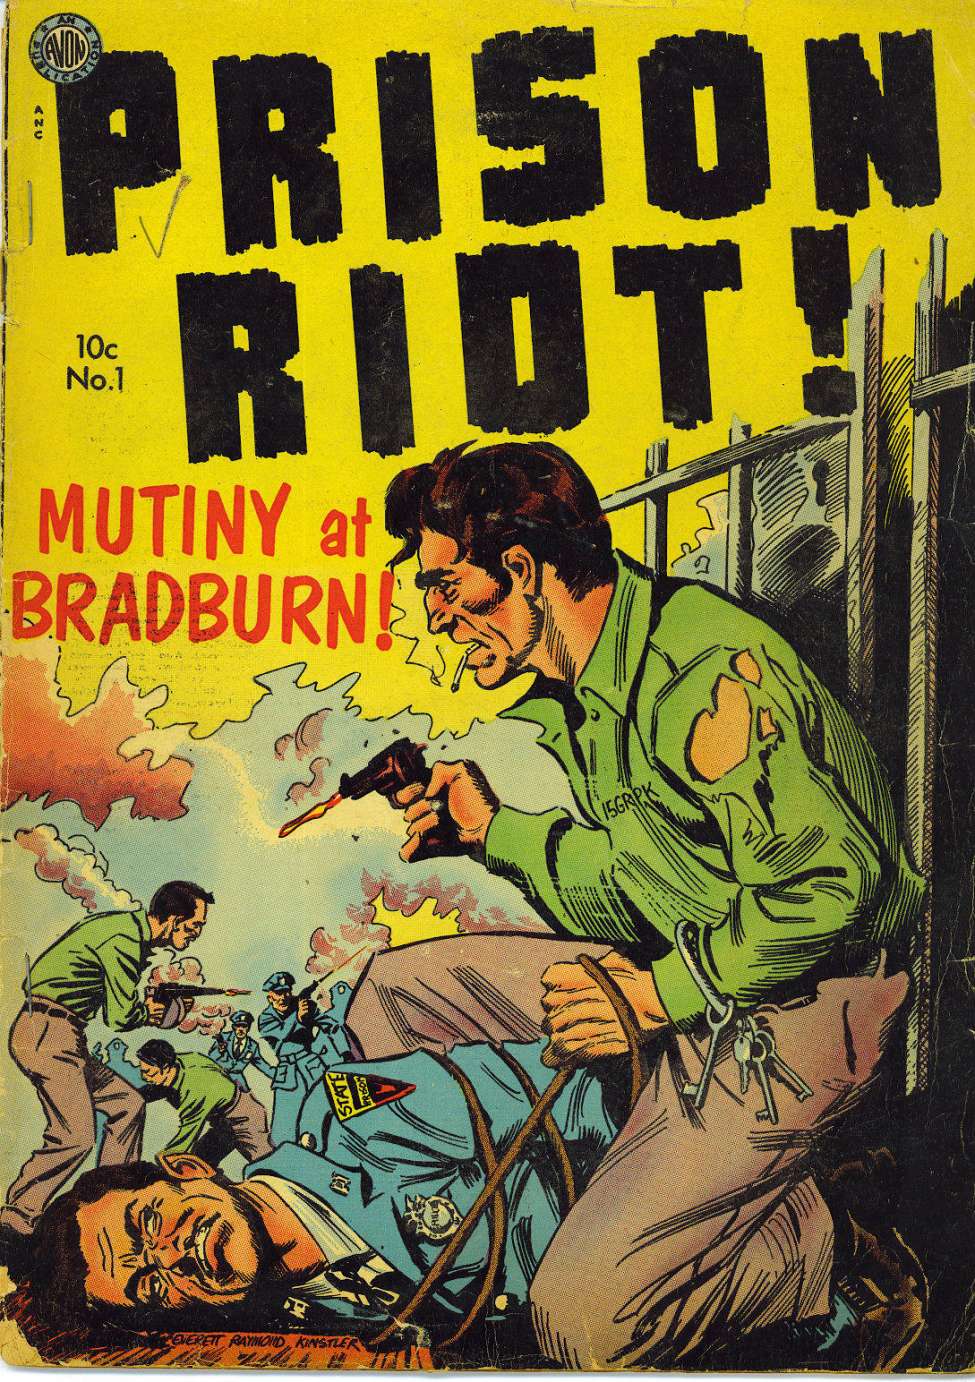 Book Cover For Prison Riot 1